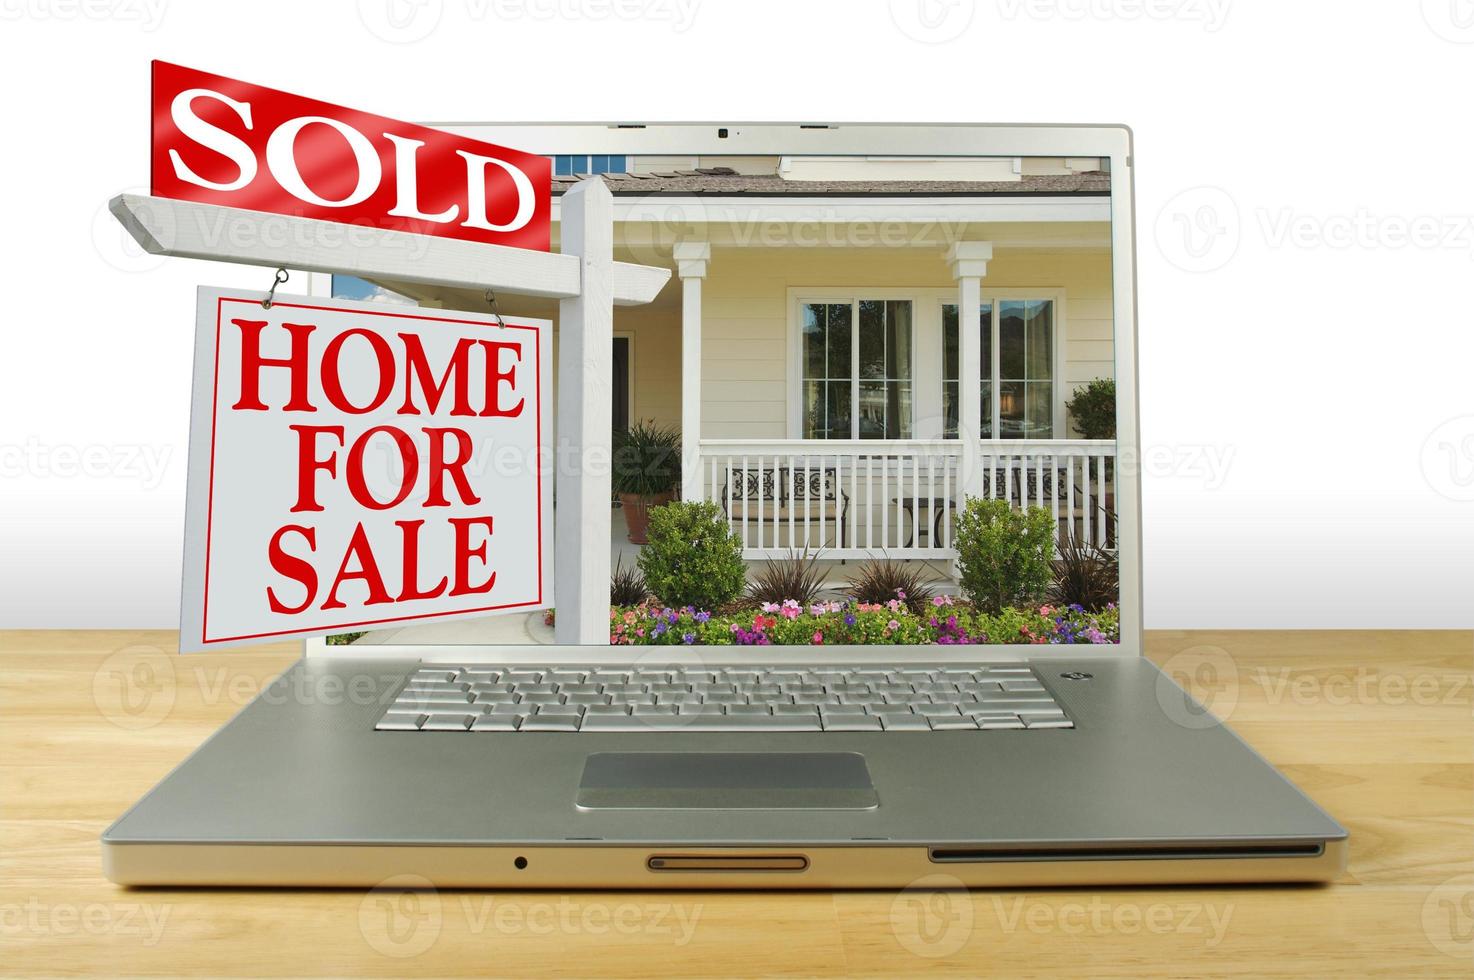 venduto casa per vendita cartello su il computer portatile foto